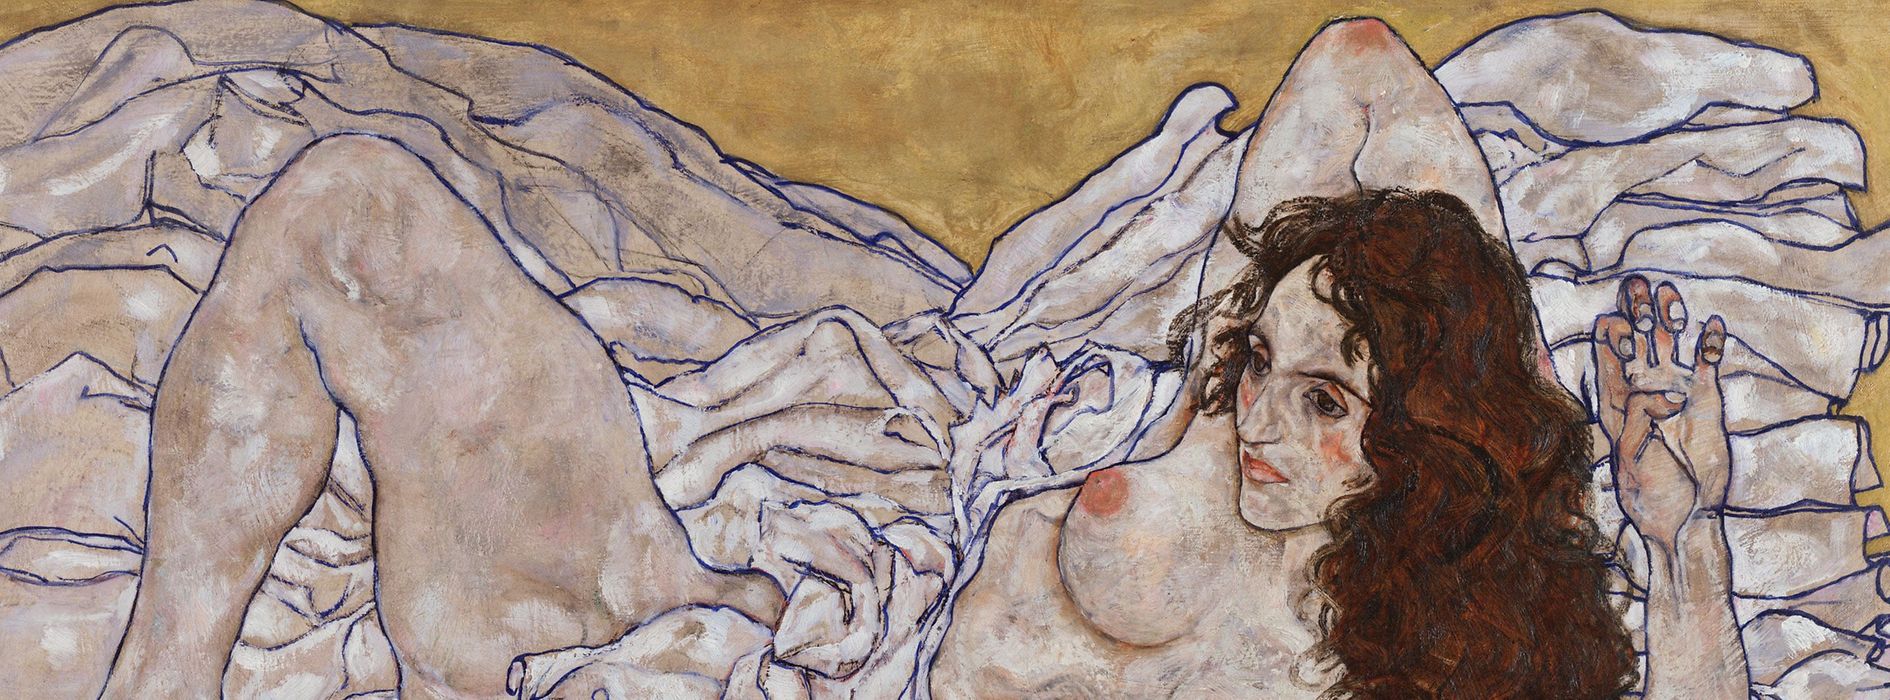 Aktbild einer liegenden Frau von Egon Schiele